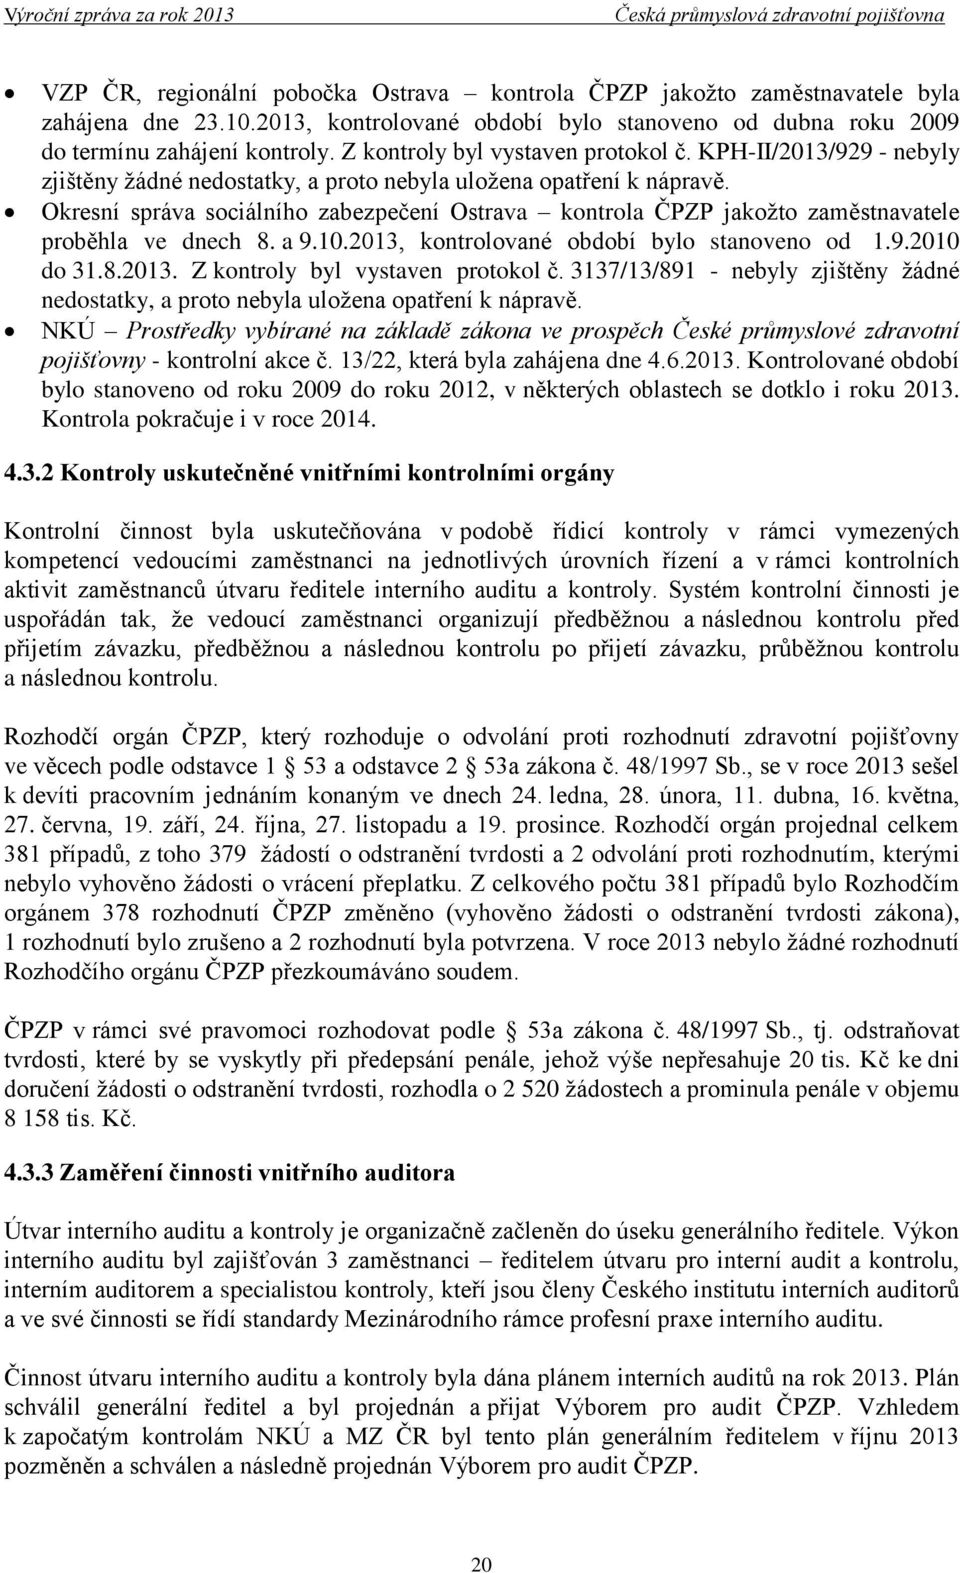 Okresní správa sociálního zabezpečení Ostrava kontrola ČPZP jakožto zaměstnavatele proběhla ve dnech 8. a 9.10.2013, kontrolované období bylo stanoveno od 1.9.2010 do 31.8.2013. Z kontroly byl vystaven protokol č.